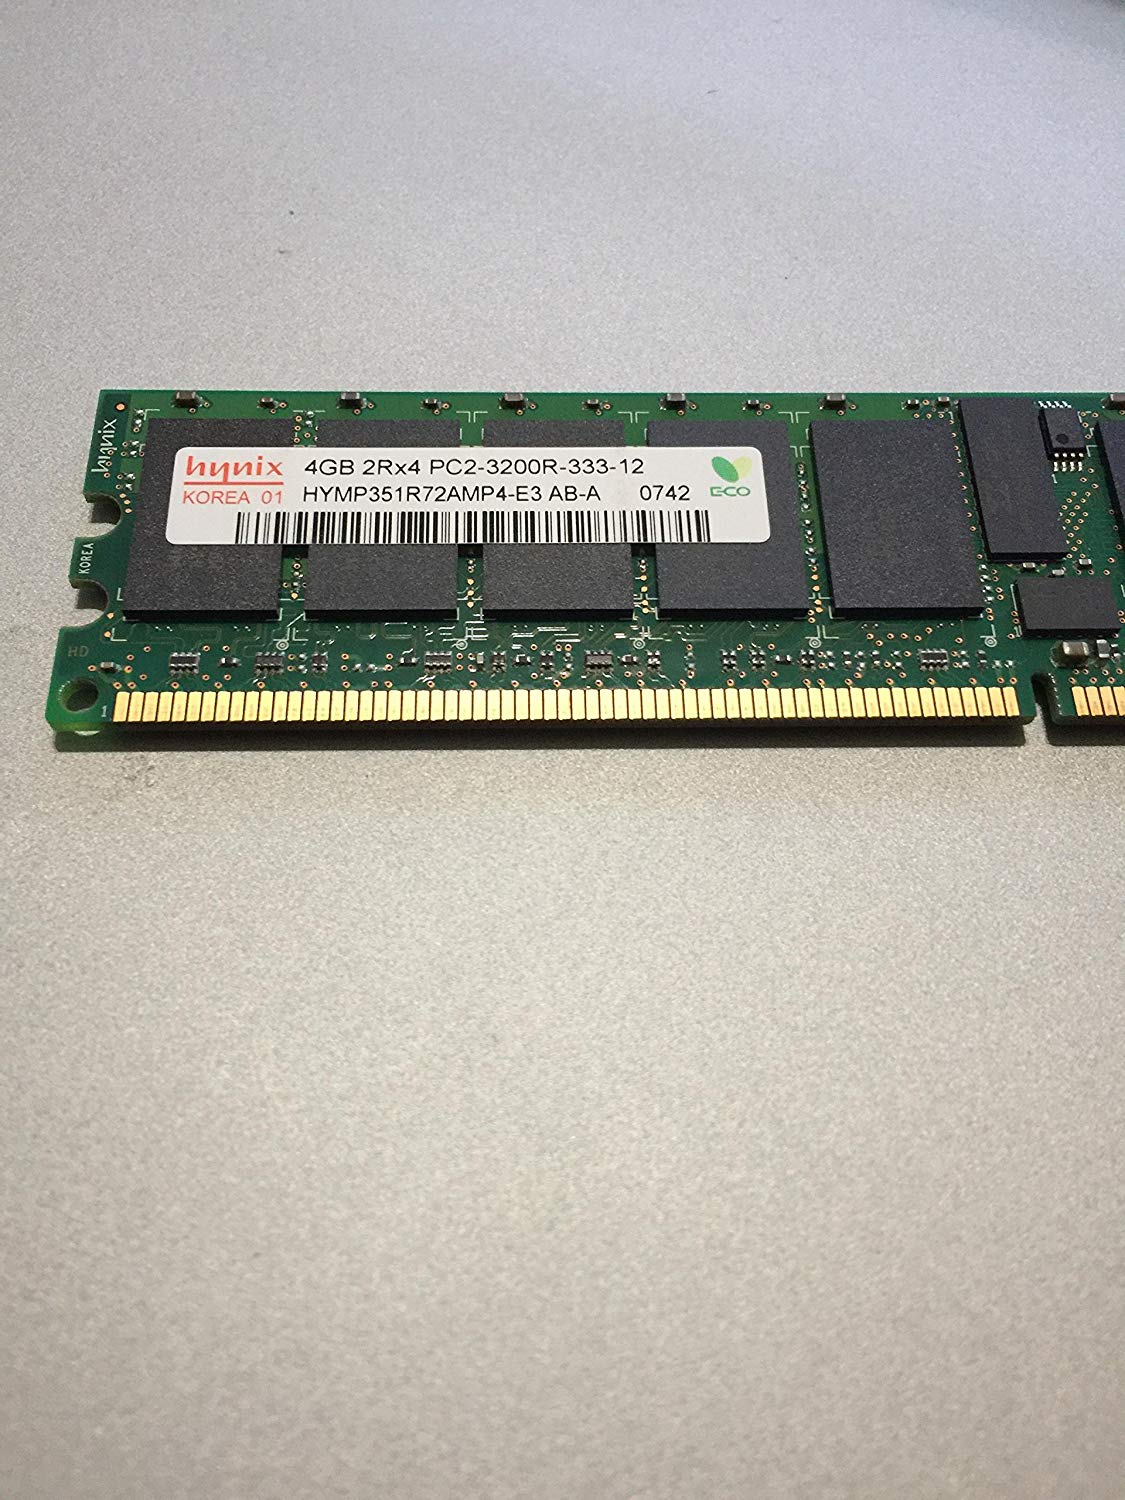 RAM PC2-3200R 4gb 2Rx4 Hynix